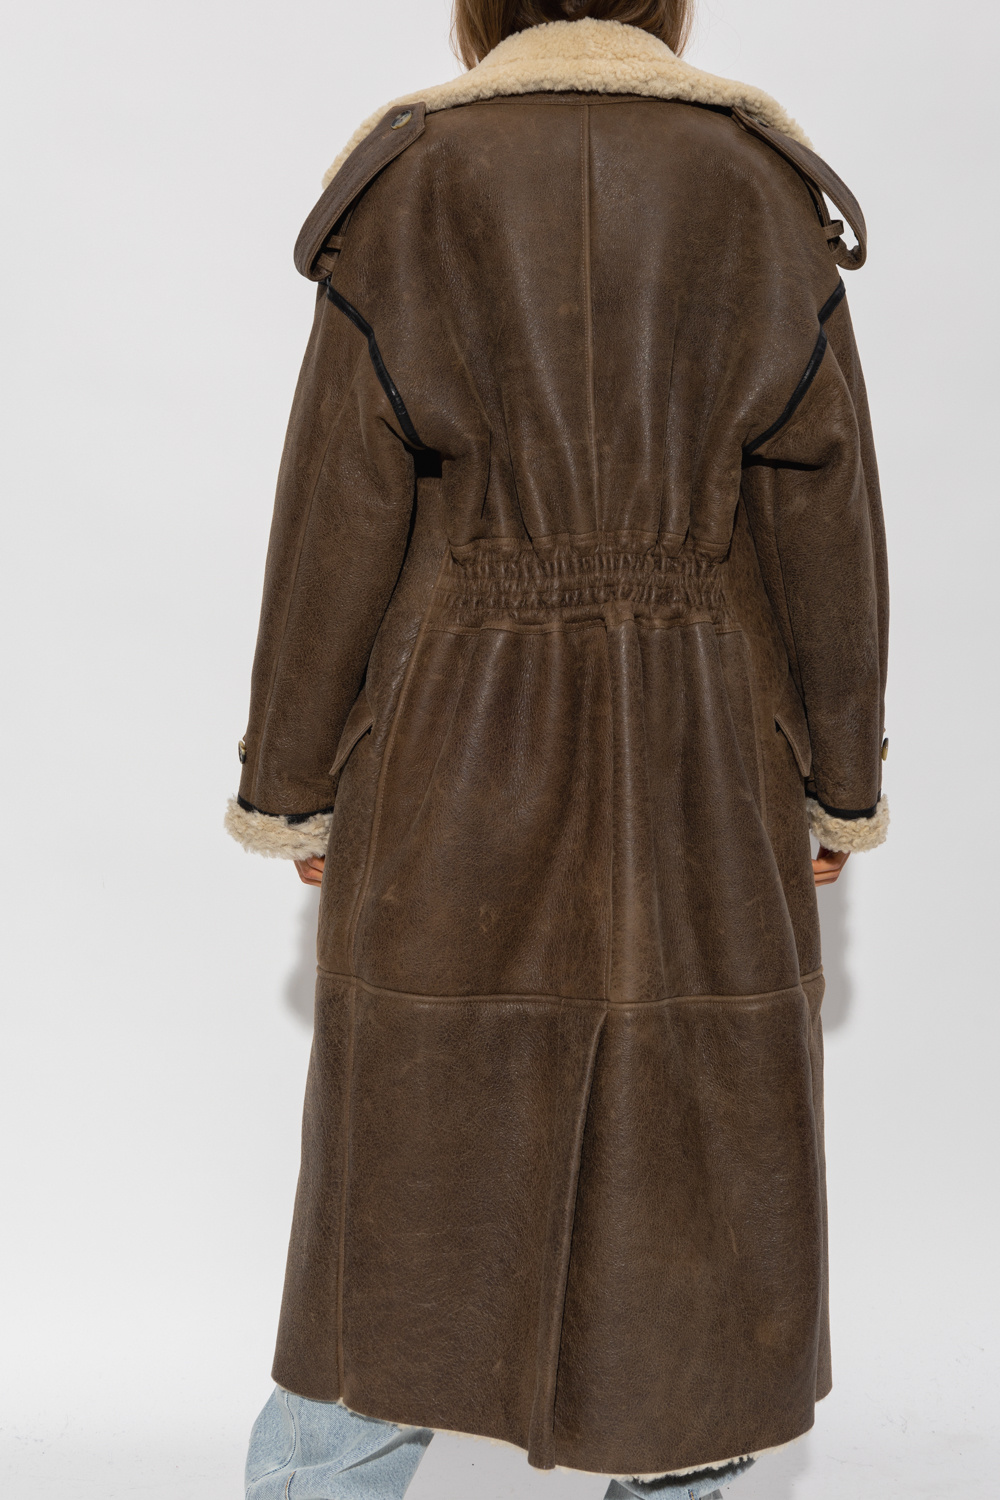 The Mannei ‘Jordan’ shearling coat